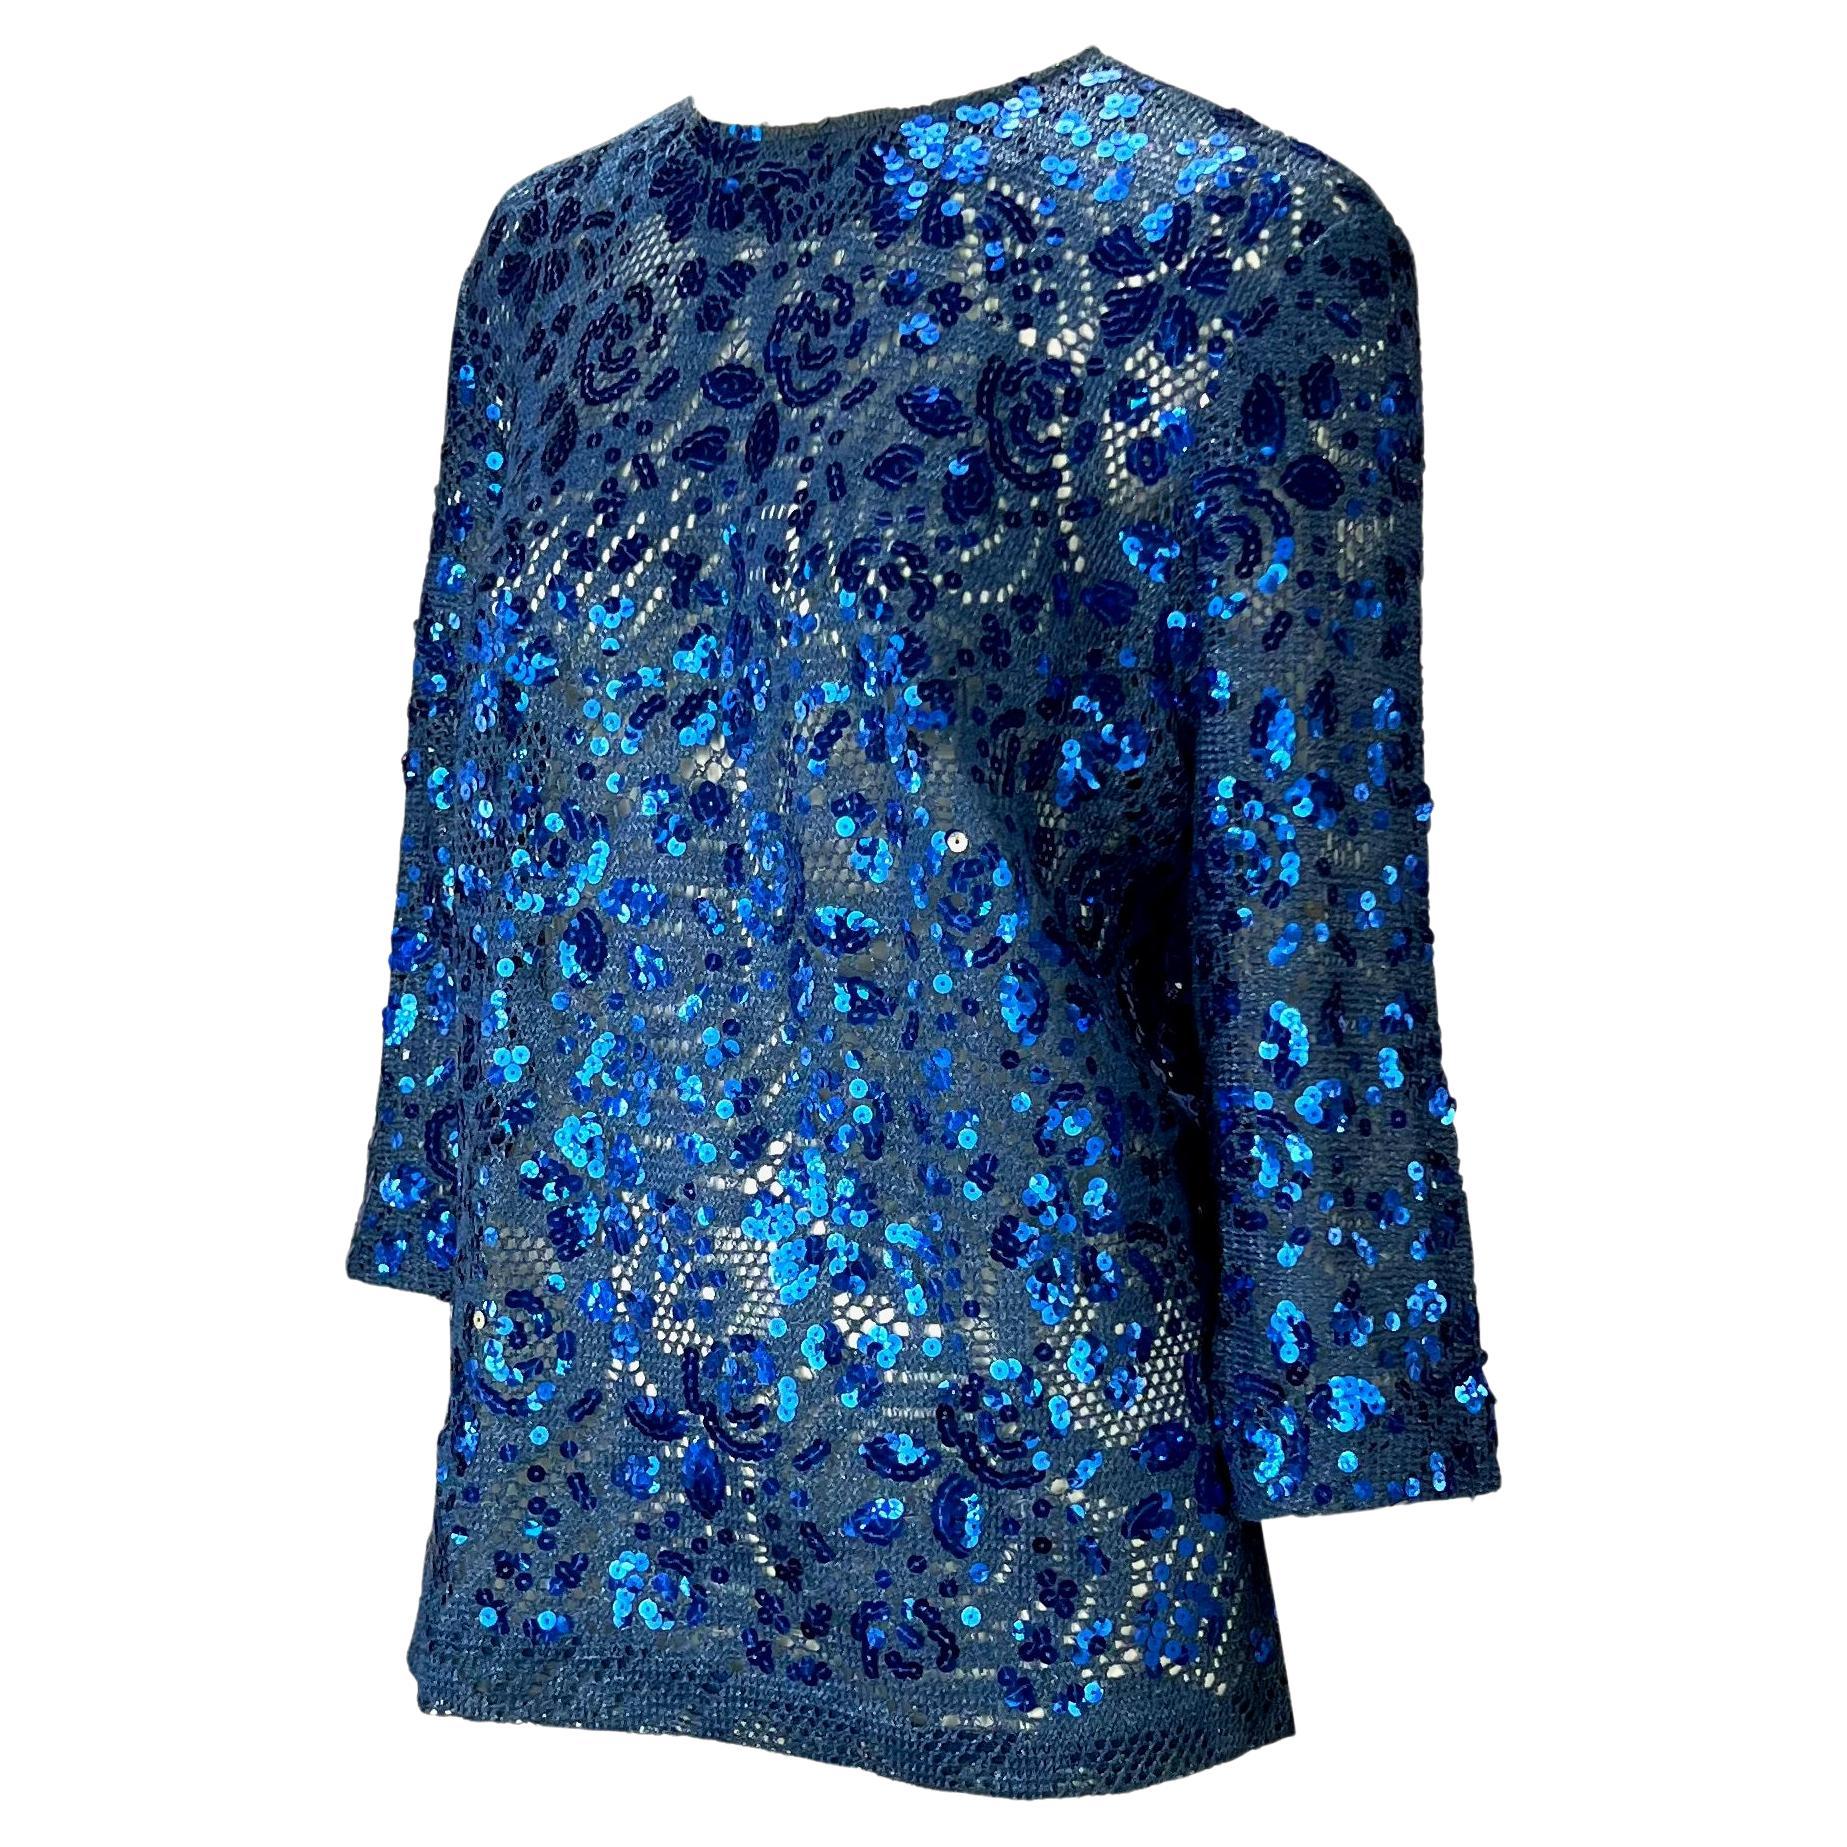 Ich präsentiere ein blaues, geblümtes Pailletten-Top von Christian Dior Boutique, entworfen von Gianfranco Ferré. Dieses seltene Strickoberteil aus den 1980er Jahren ist mit Pailletten besetzt und hat ein florales Muster. Das Oberteil hat einen